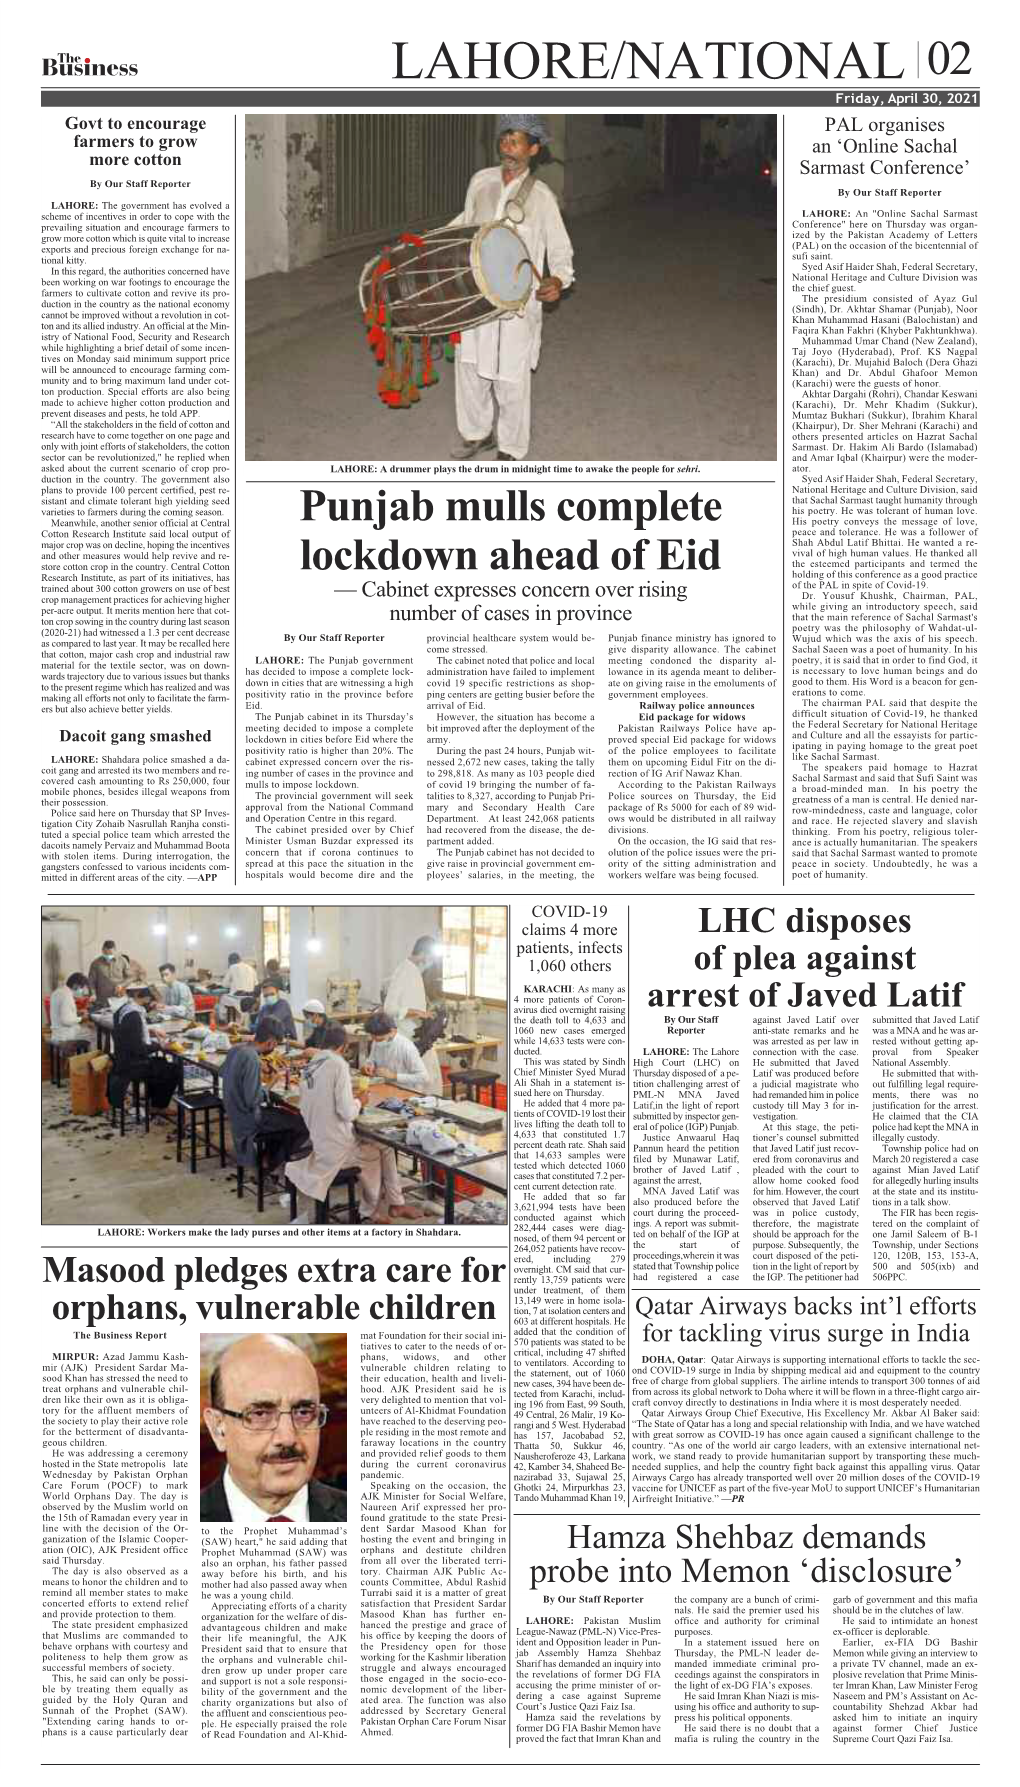 LHC Disposes of Plea Against Arrest of Javed Latif